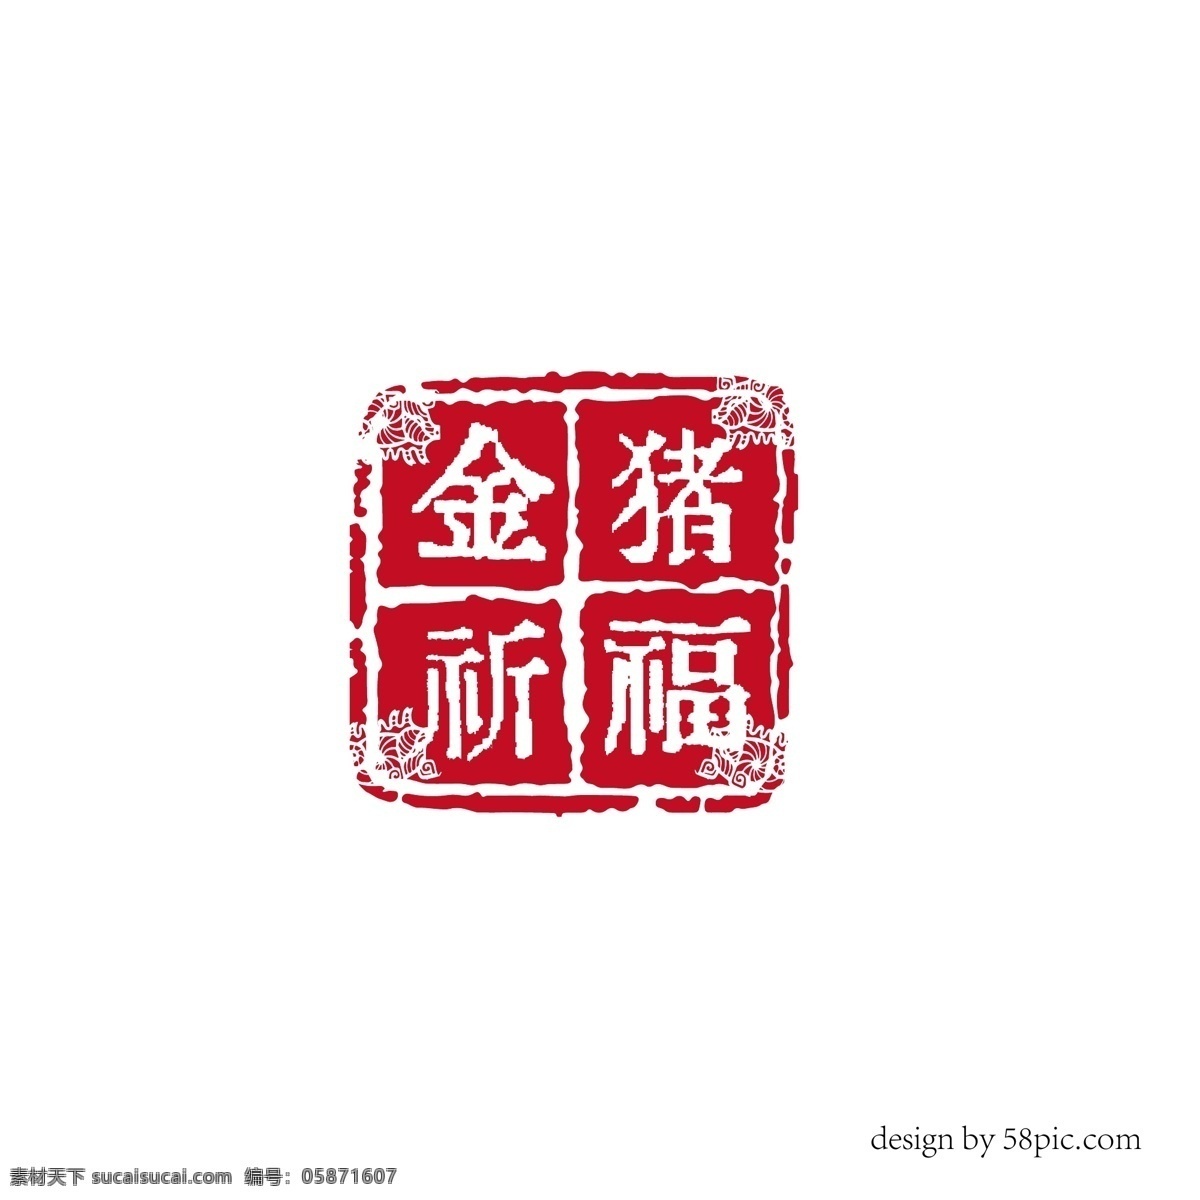 金 猪 祈福 中国 古风 印章 艺术 字体 金猪祈福 古风印章 印章字体 新年艺术字体 猪年